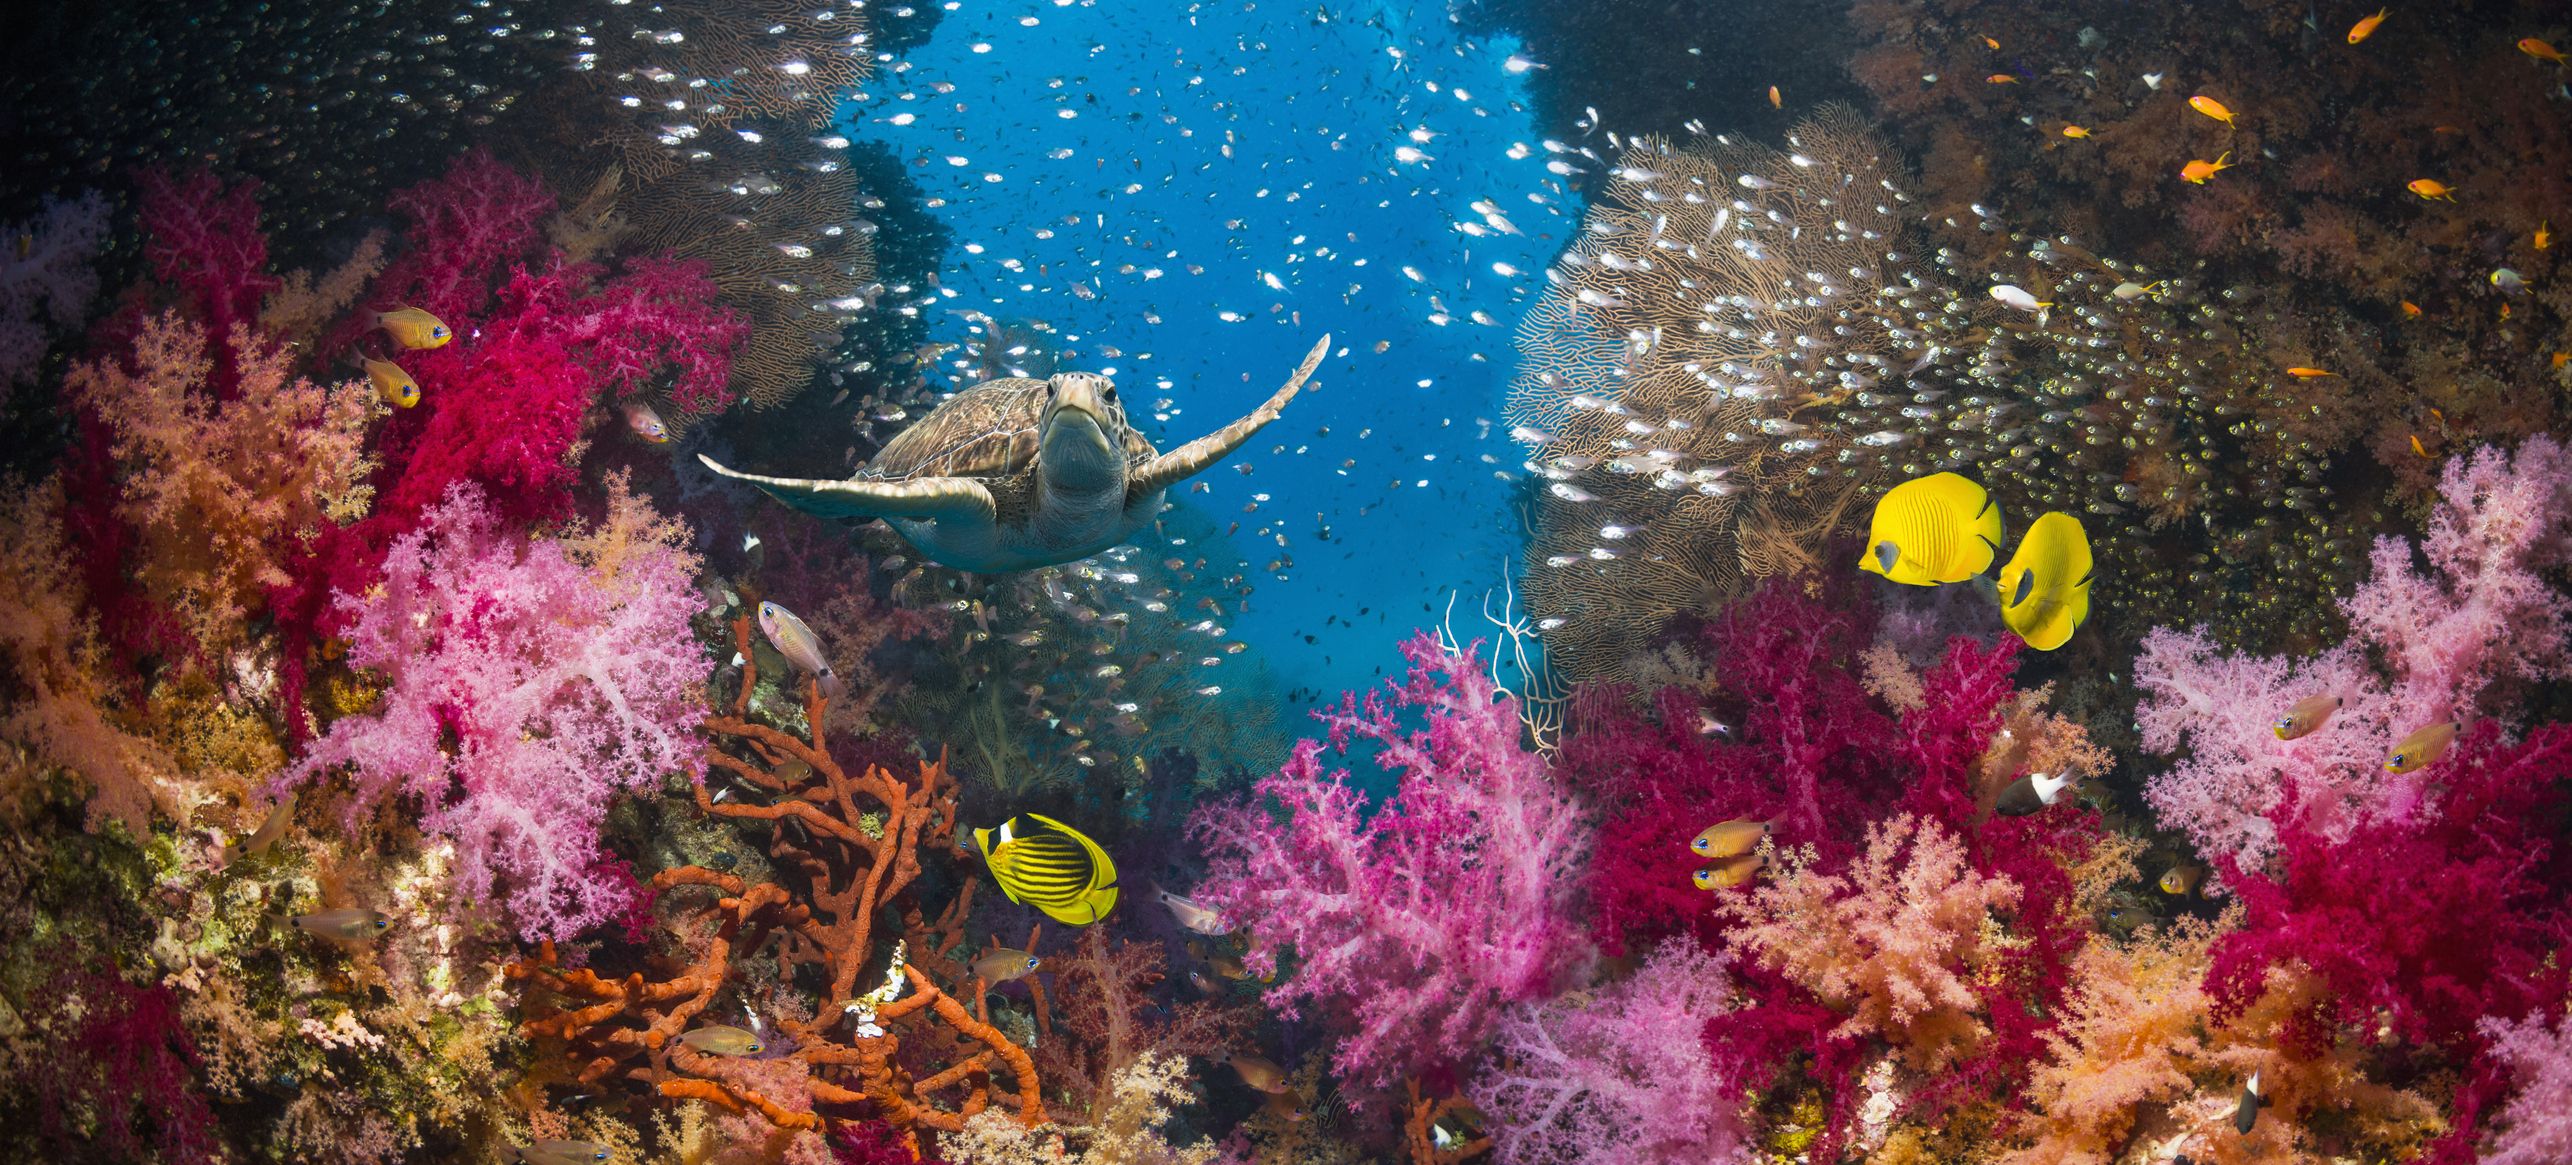 underwater marine life